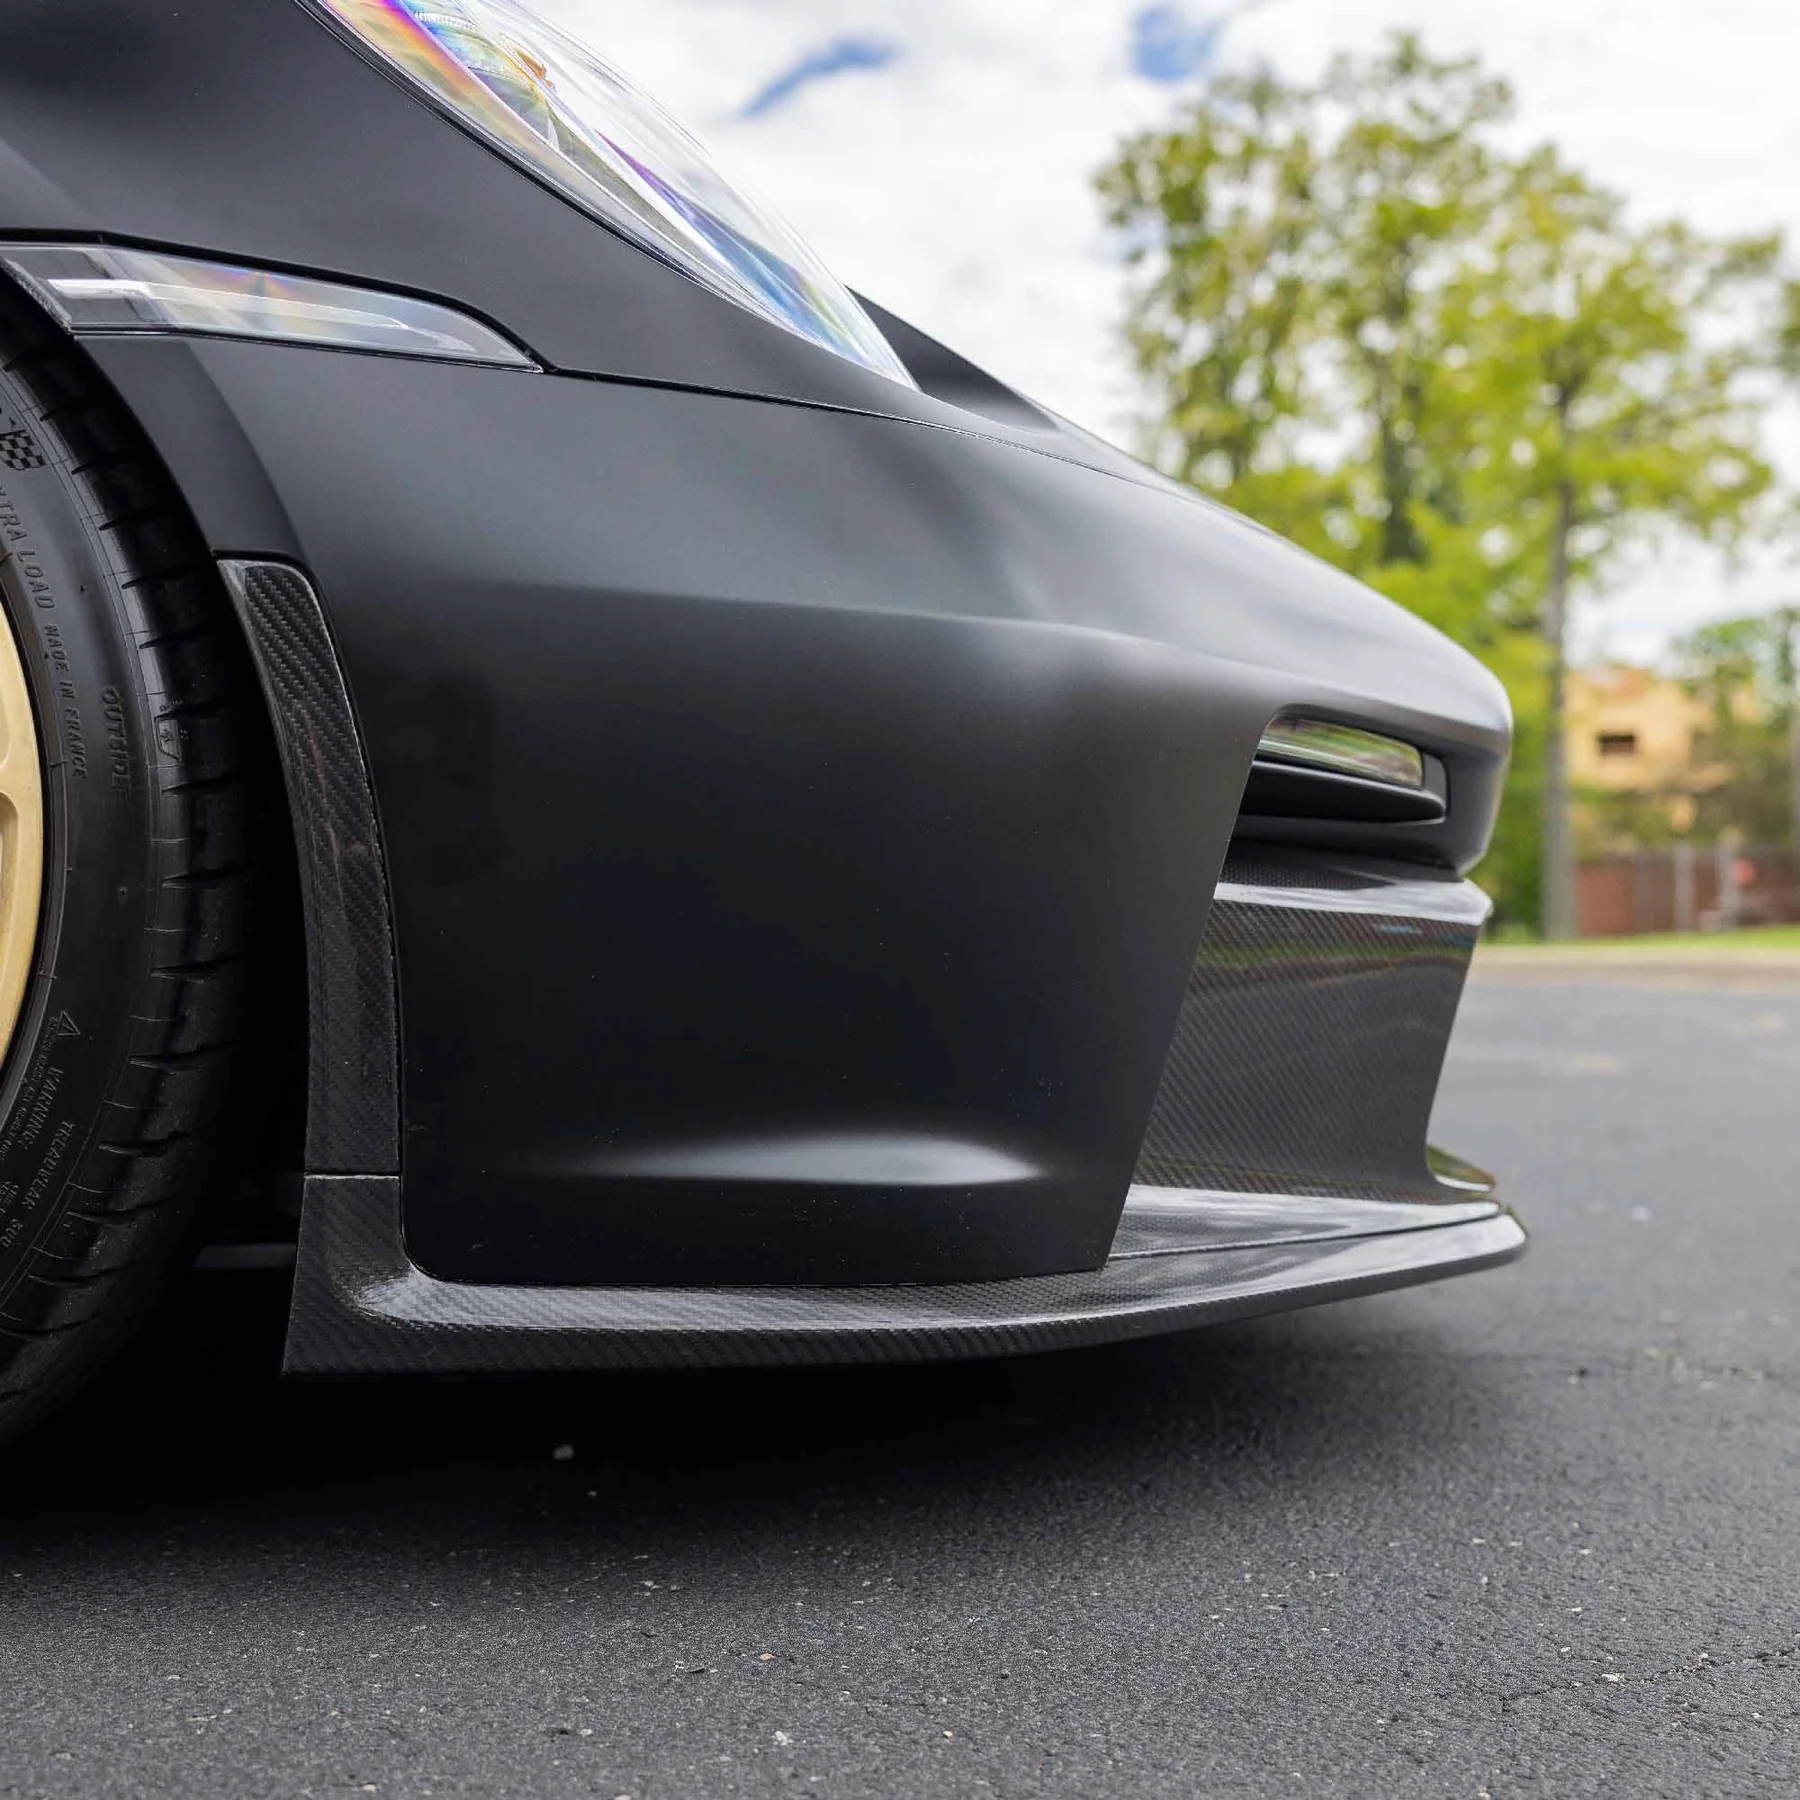 RACING SPORT CONCEPTS - Carbon Frontschürzeneinsatz für Porsche 992 GT3